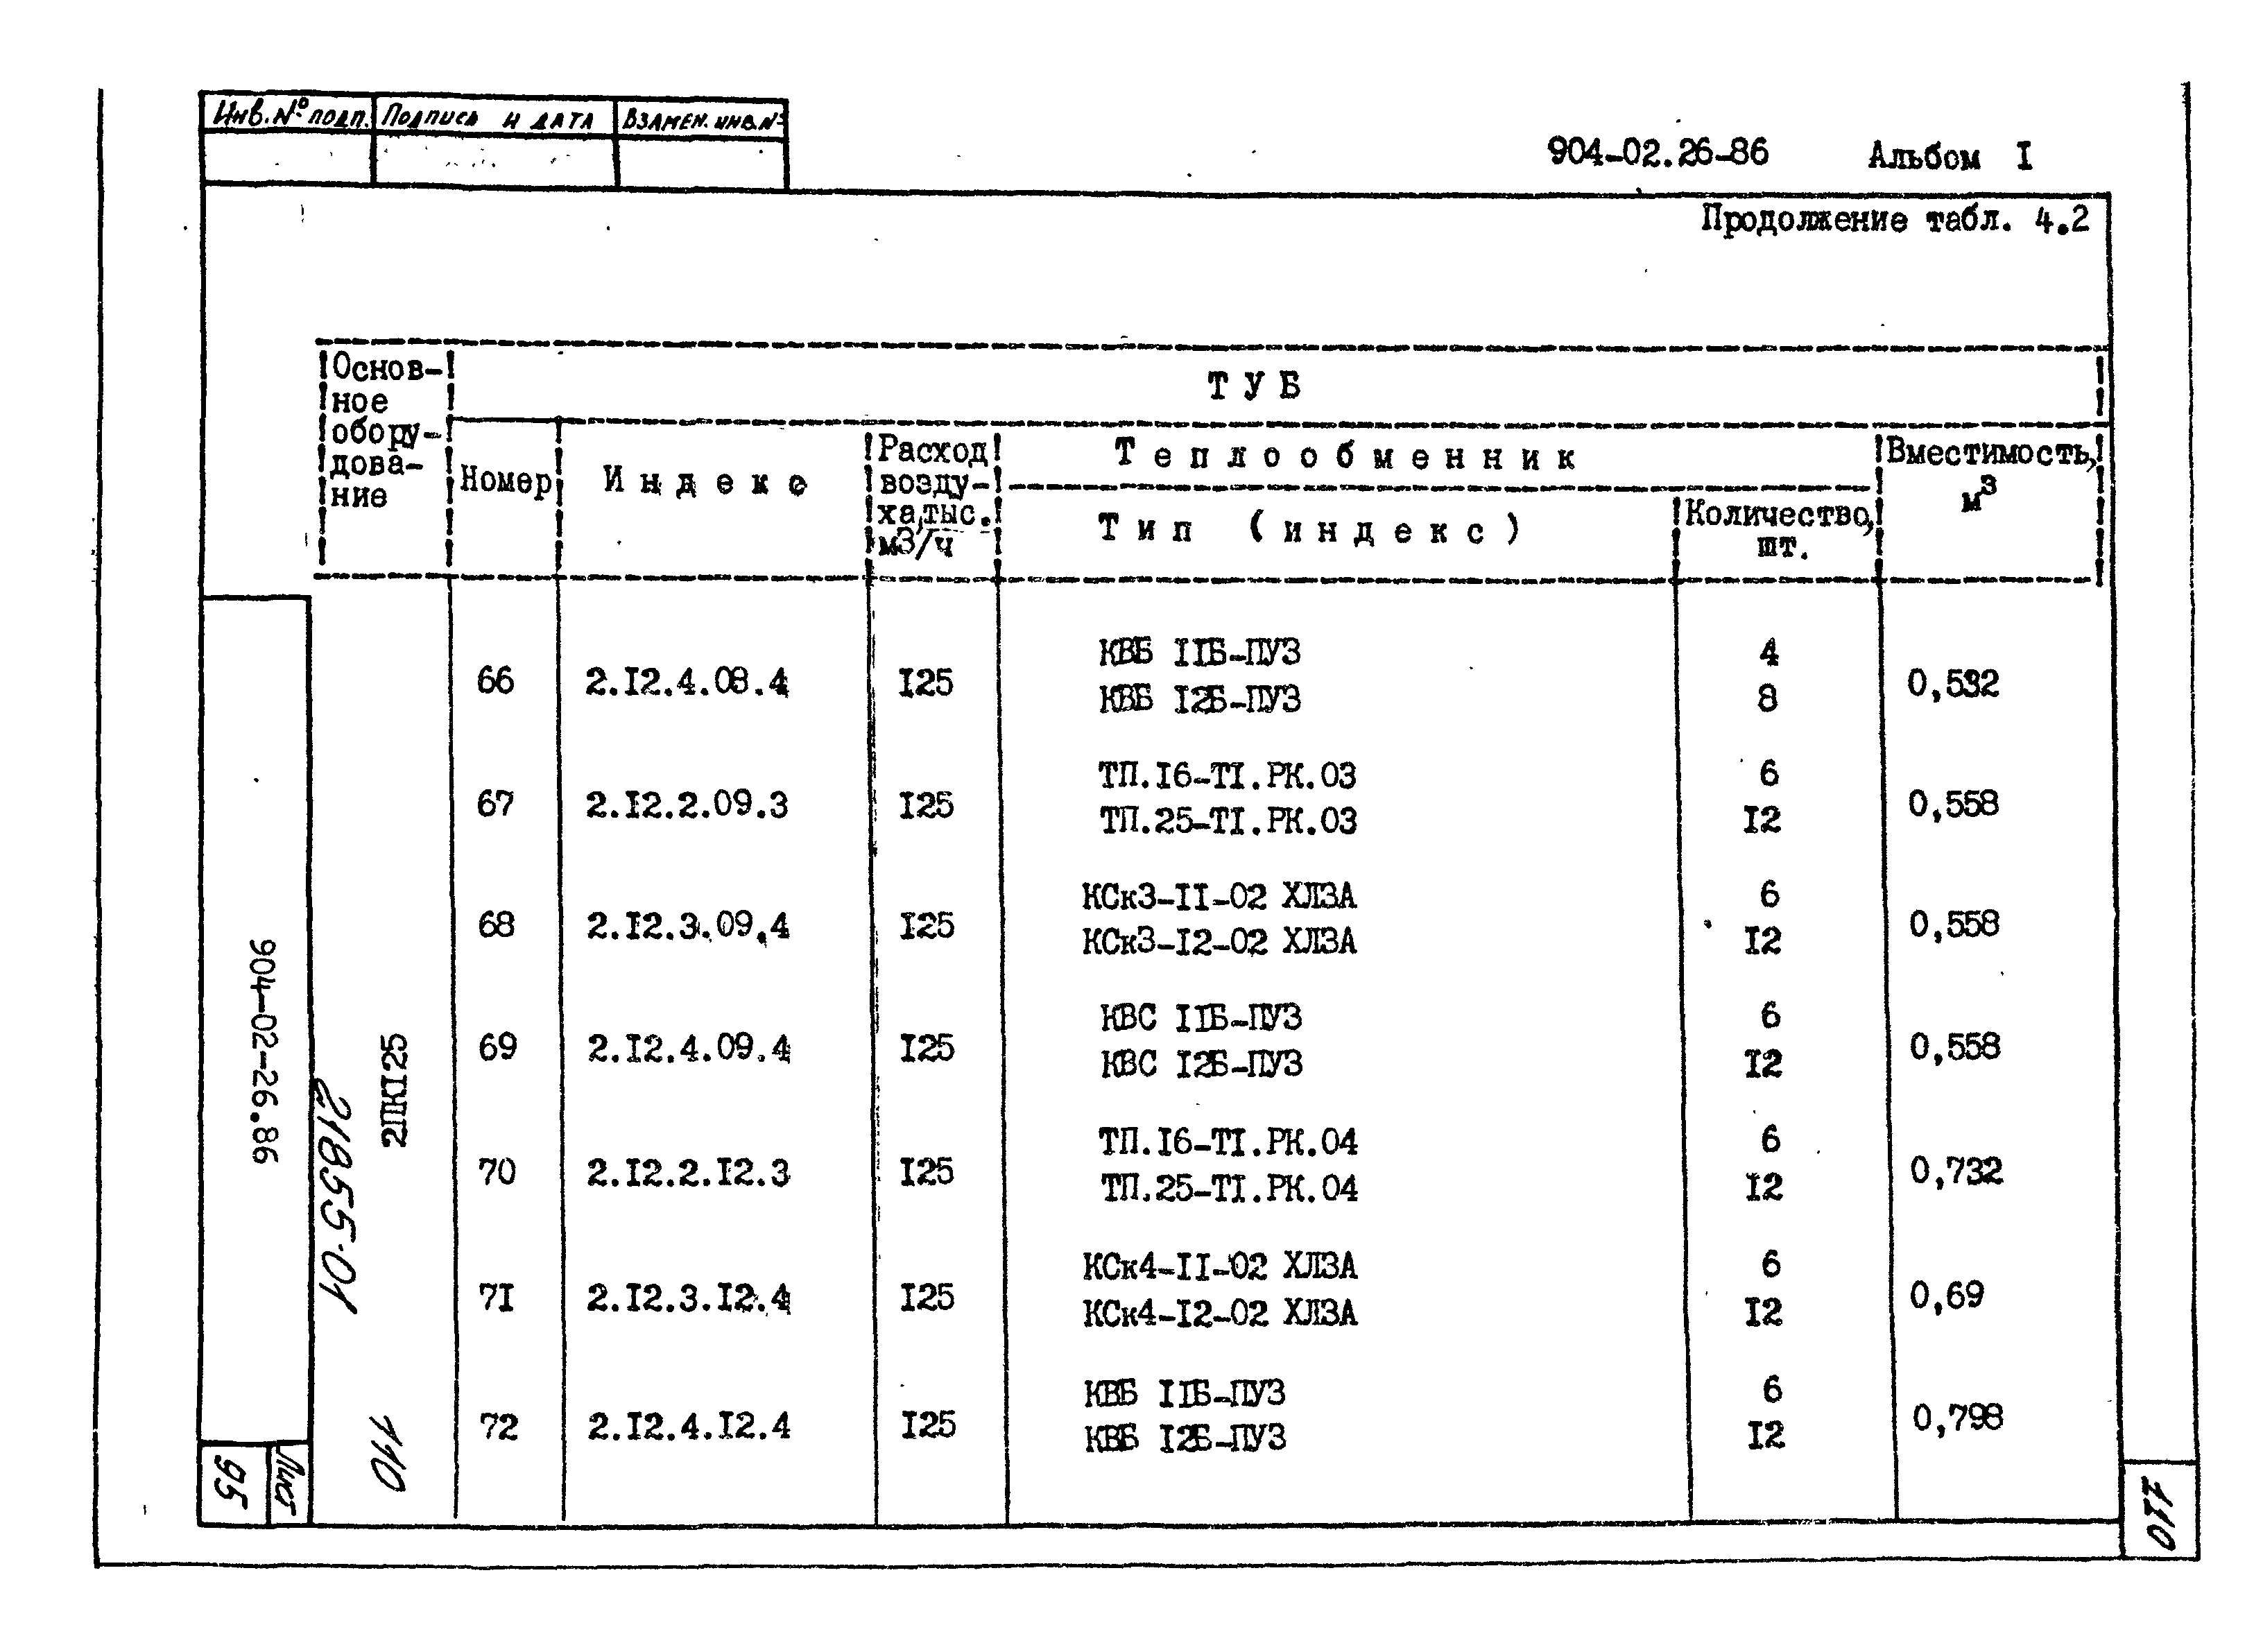 Типовые материалы для проектирования 904-02-26.86